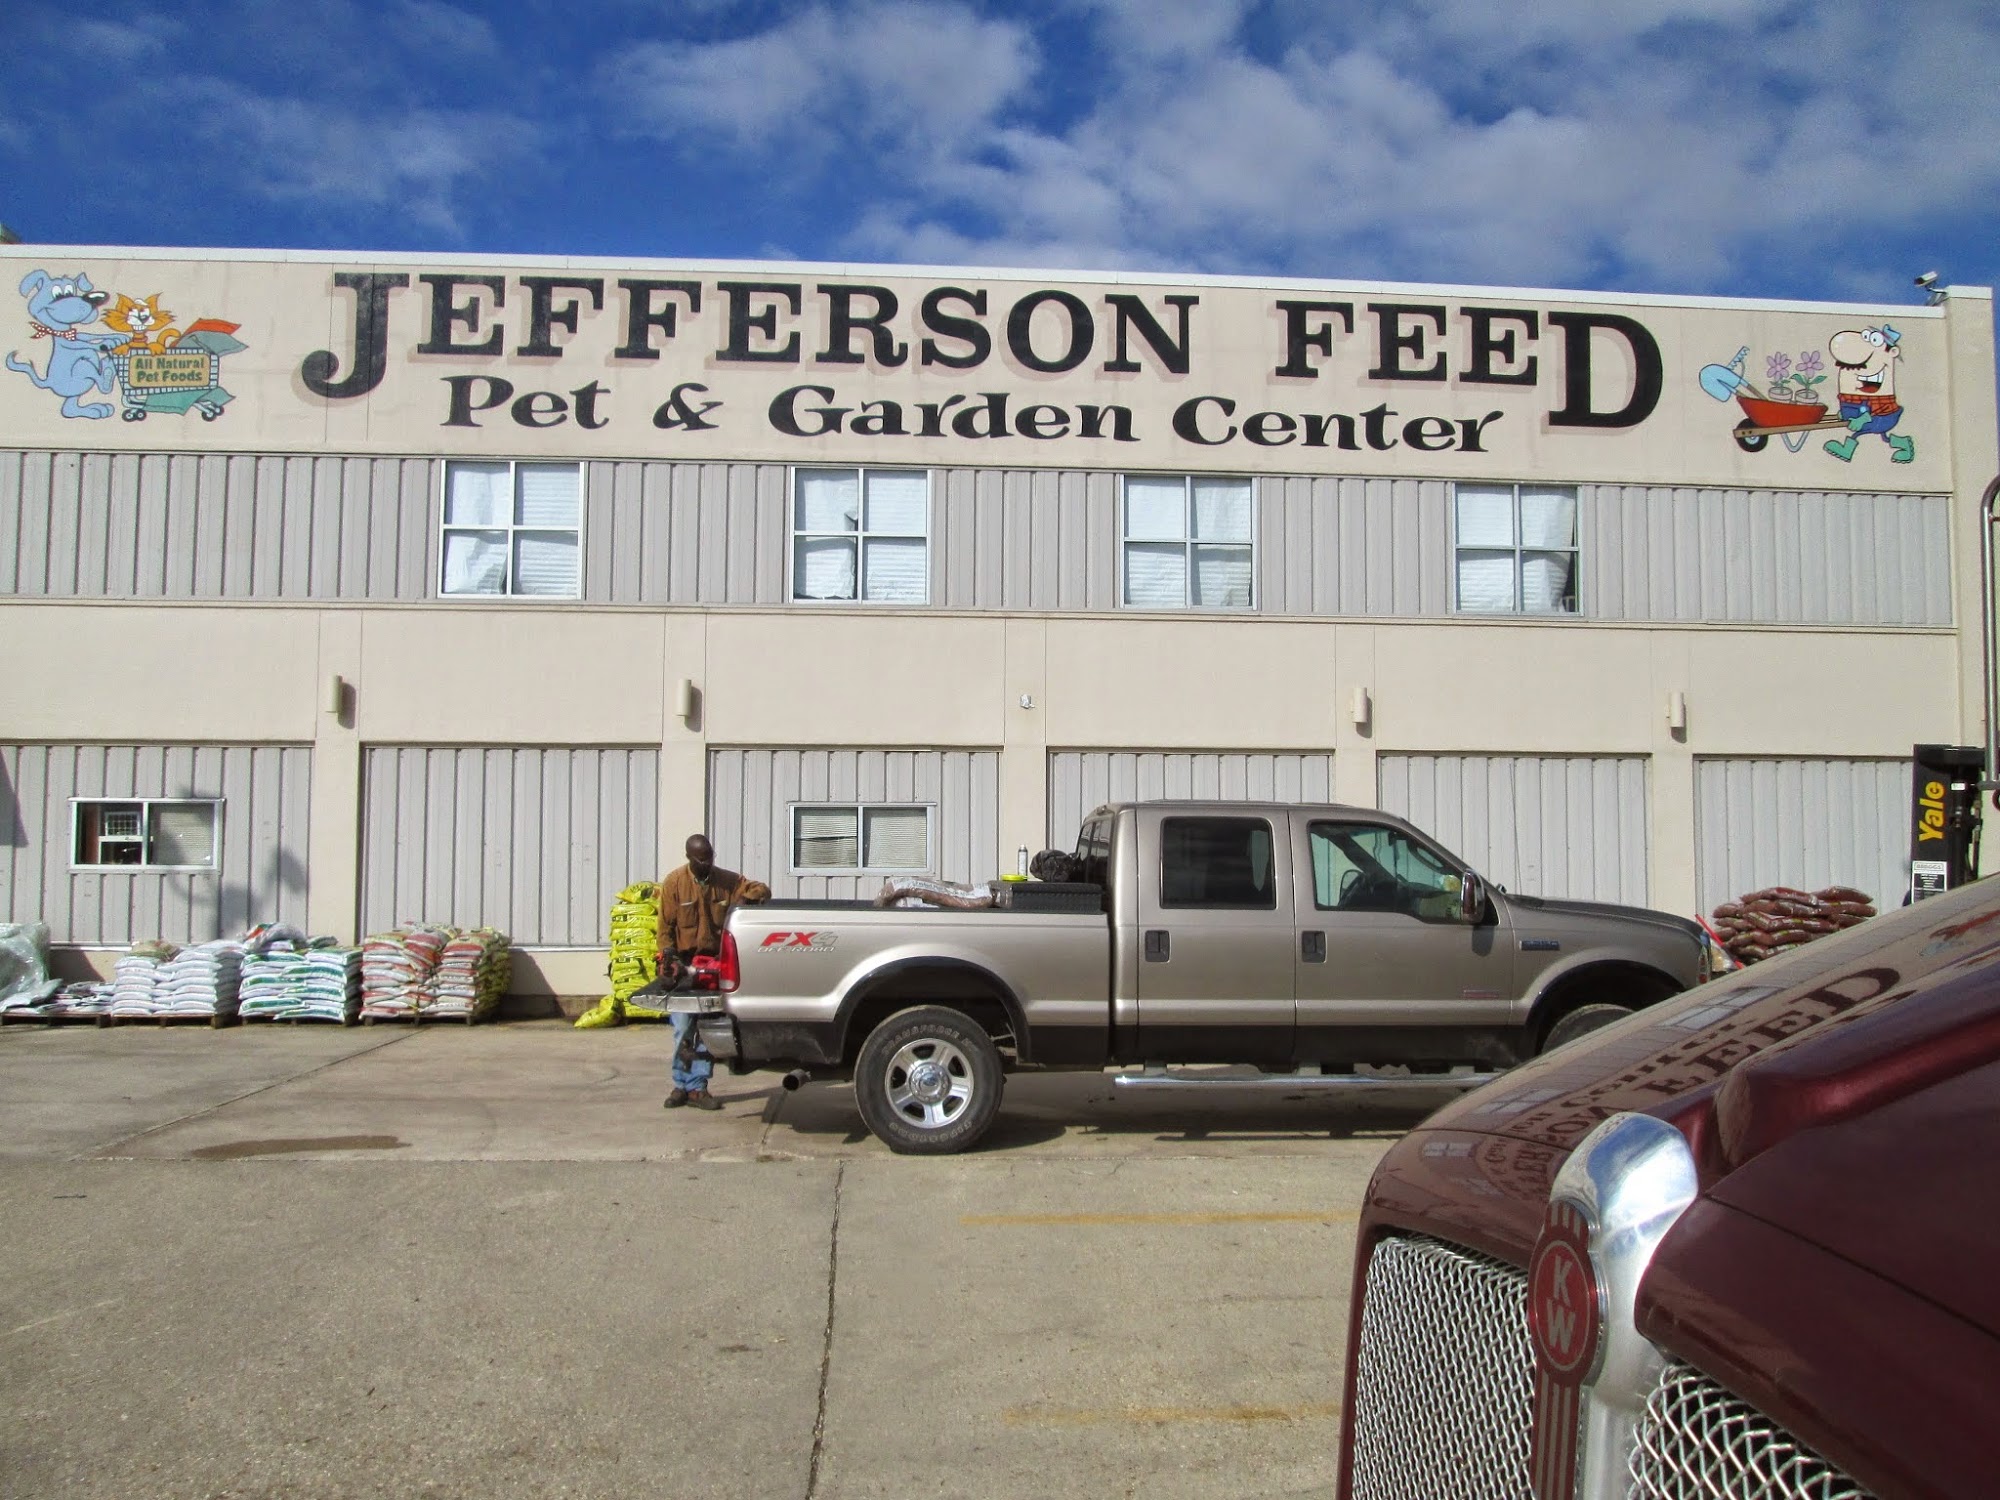 Jefferson Feed, Pet & Garden Center